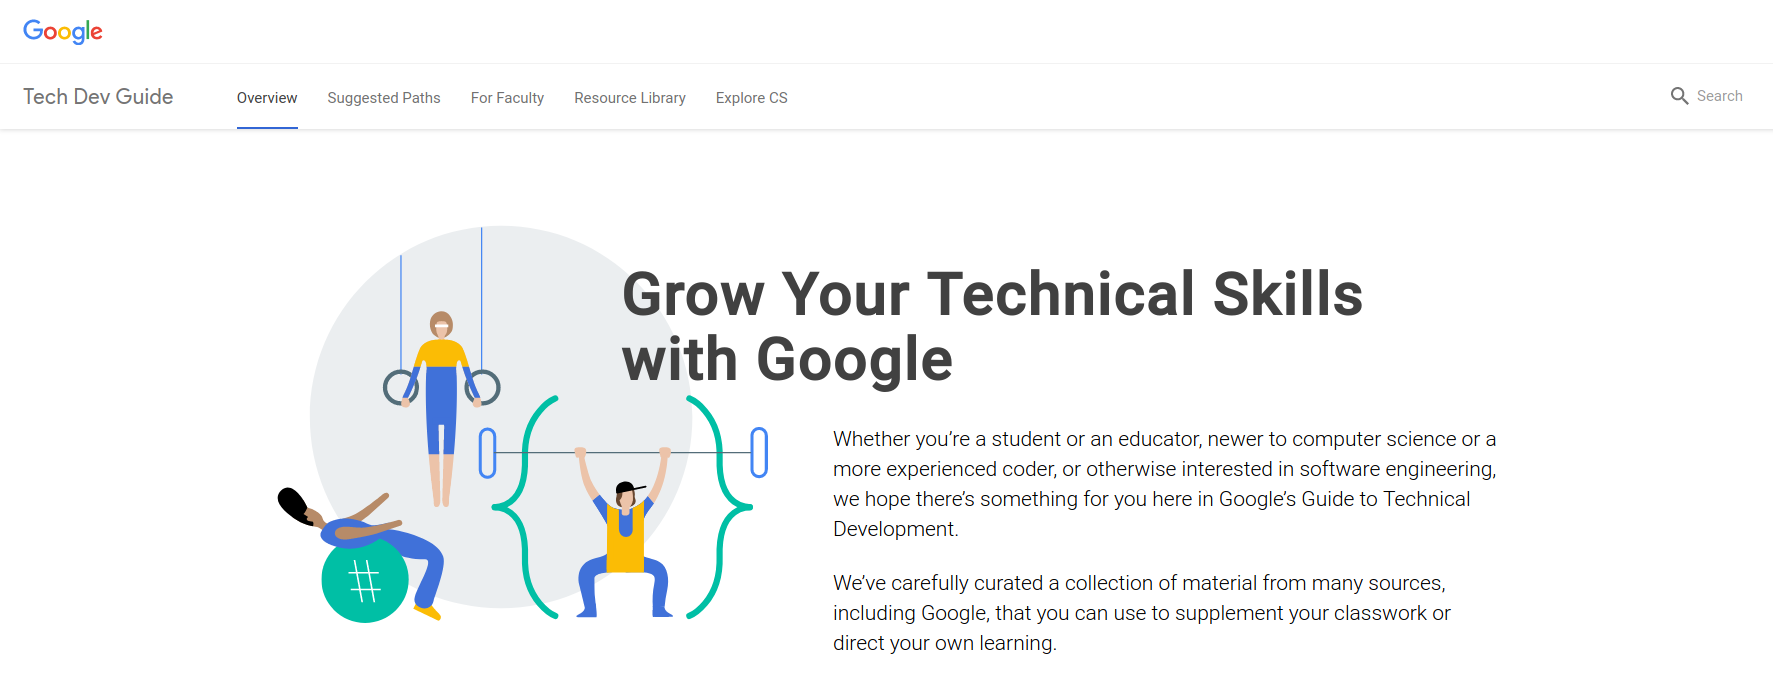 Google Tech Dev Guide Landing
Page